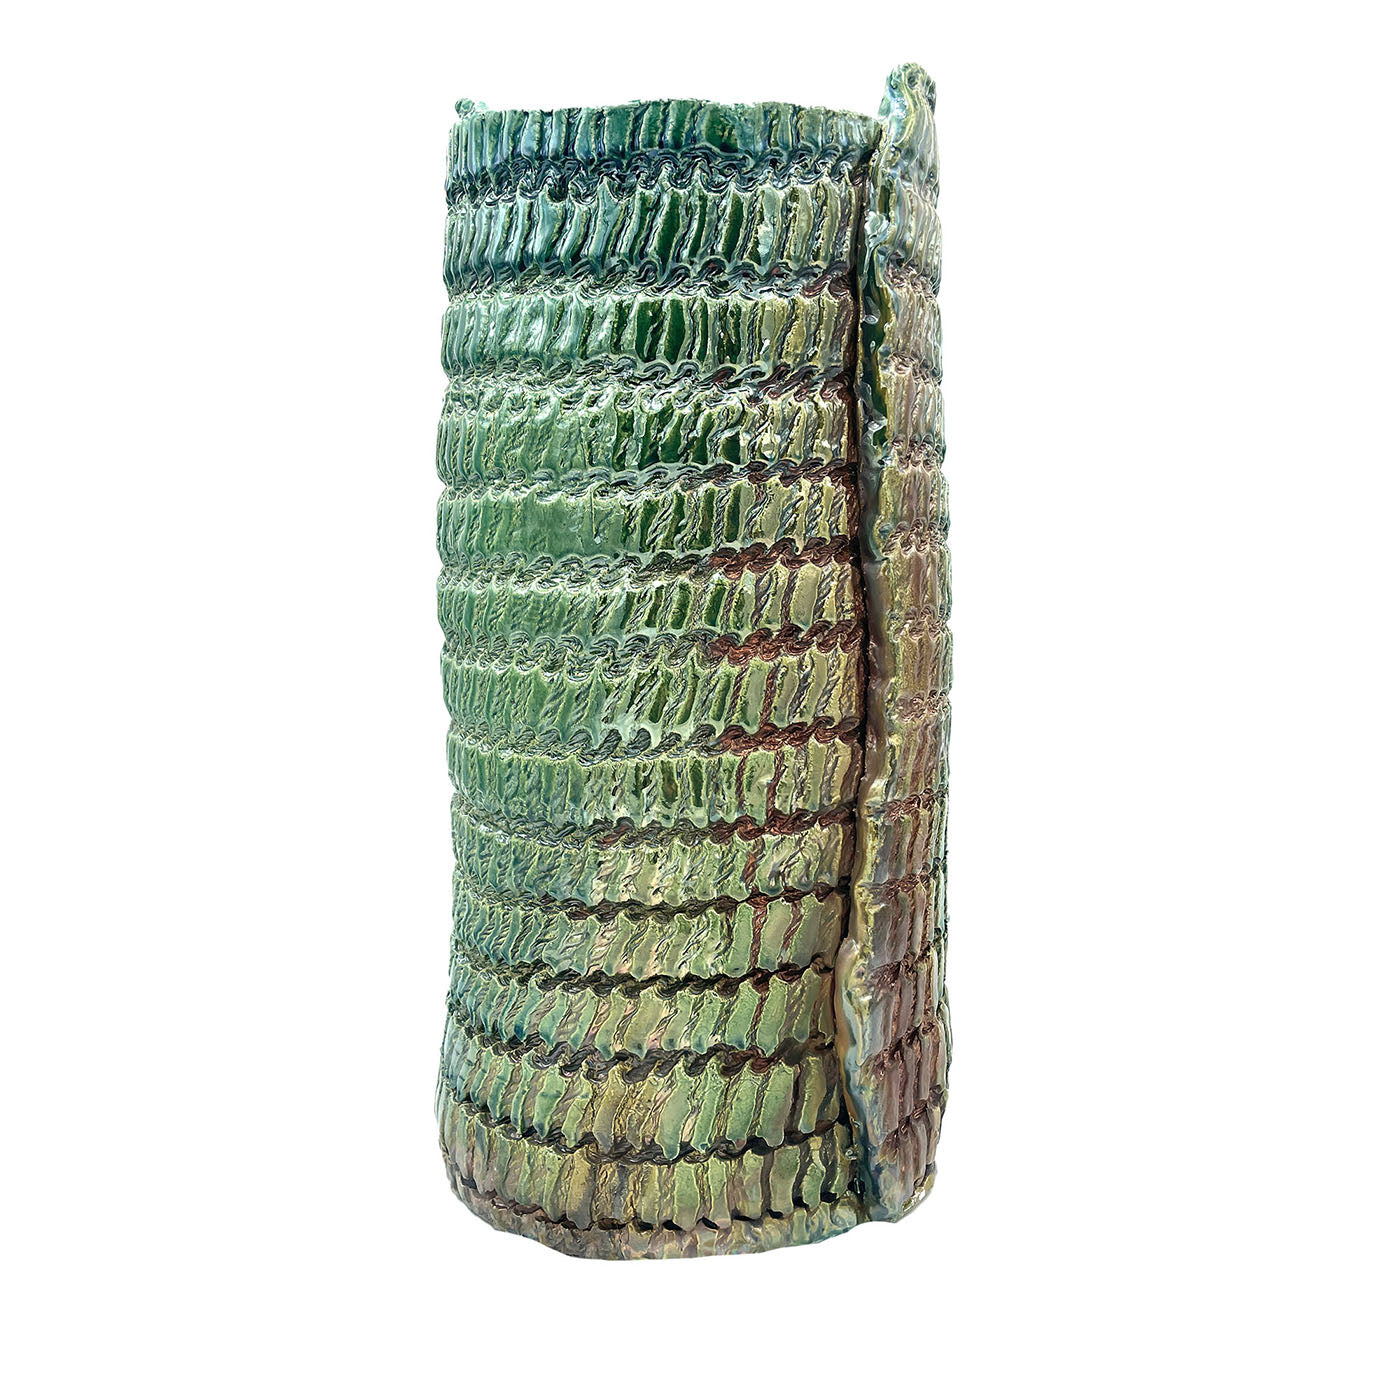 Vaso Raku metallizzato iridescente con stampa tessile - Vista principale